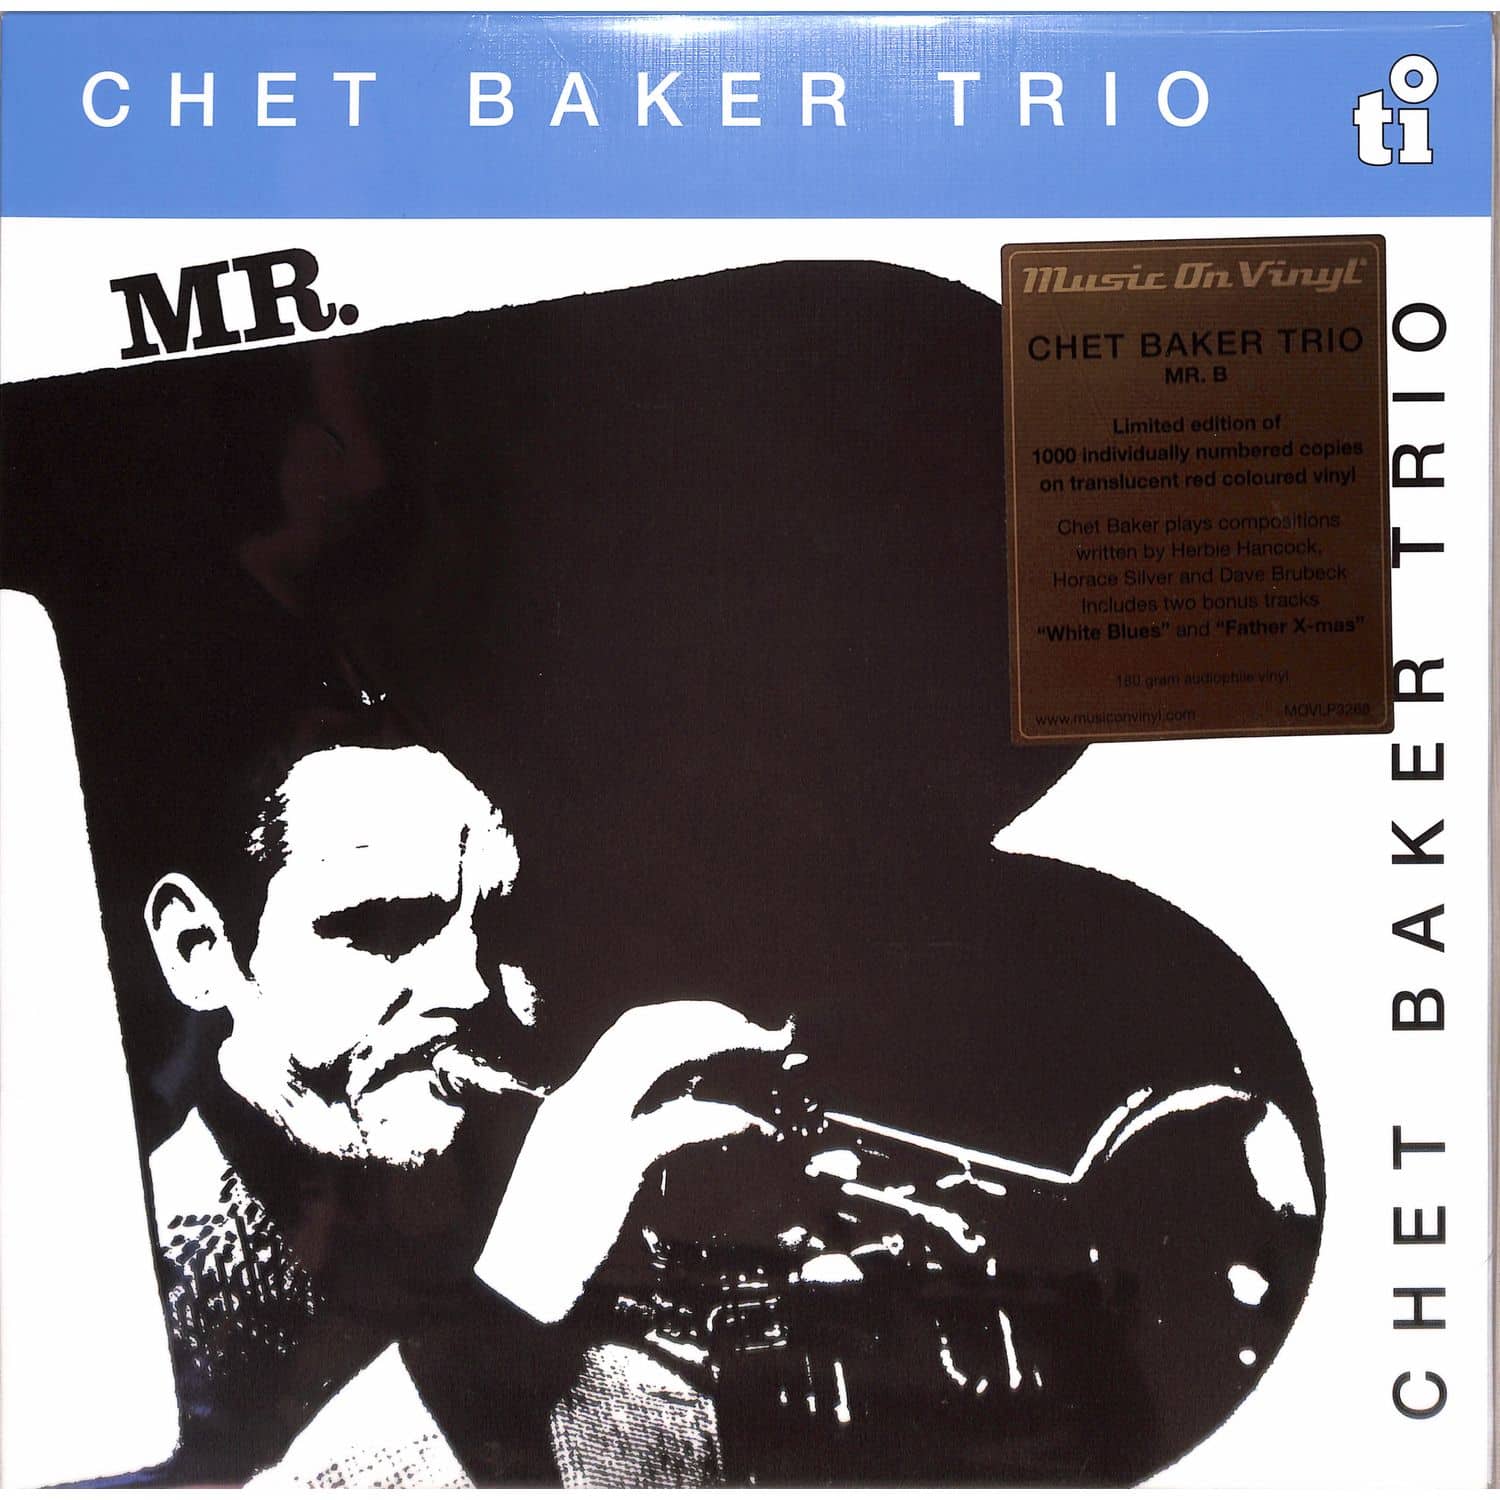 Chet-Baker-Trio - MR.B 